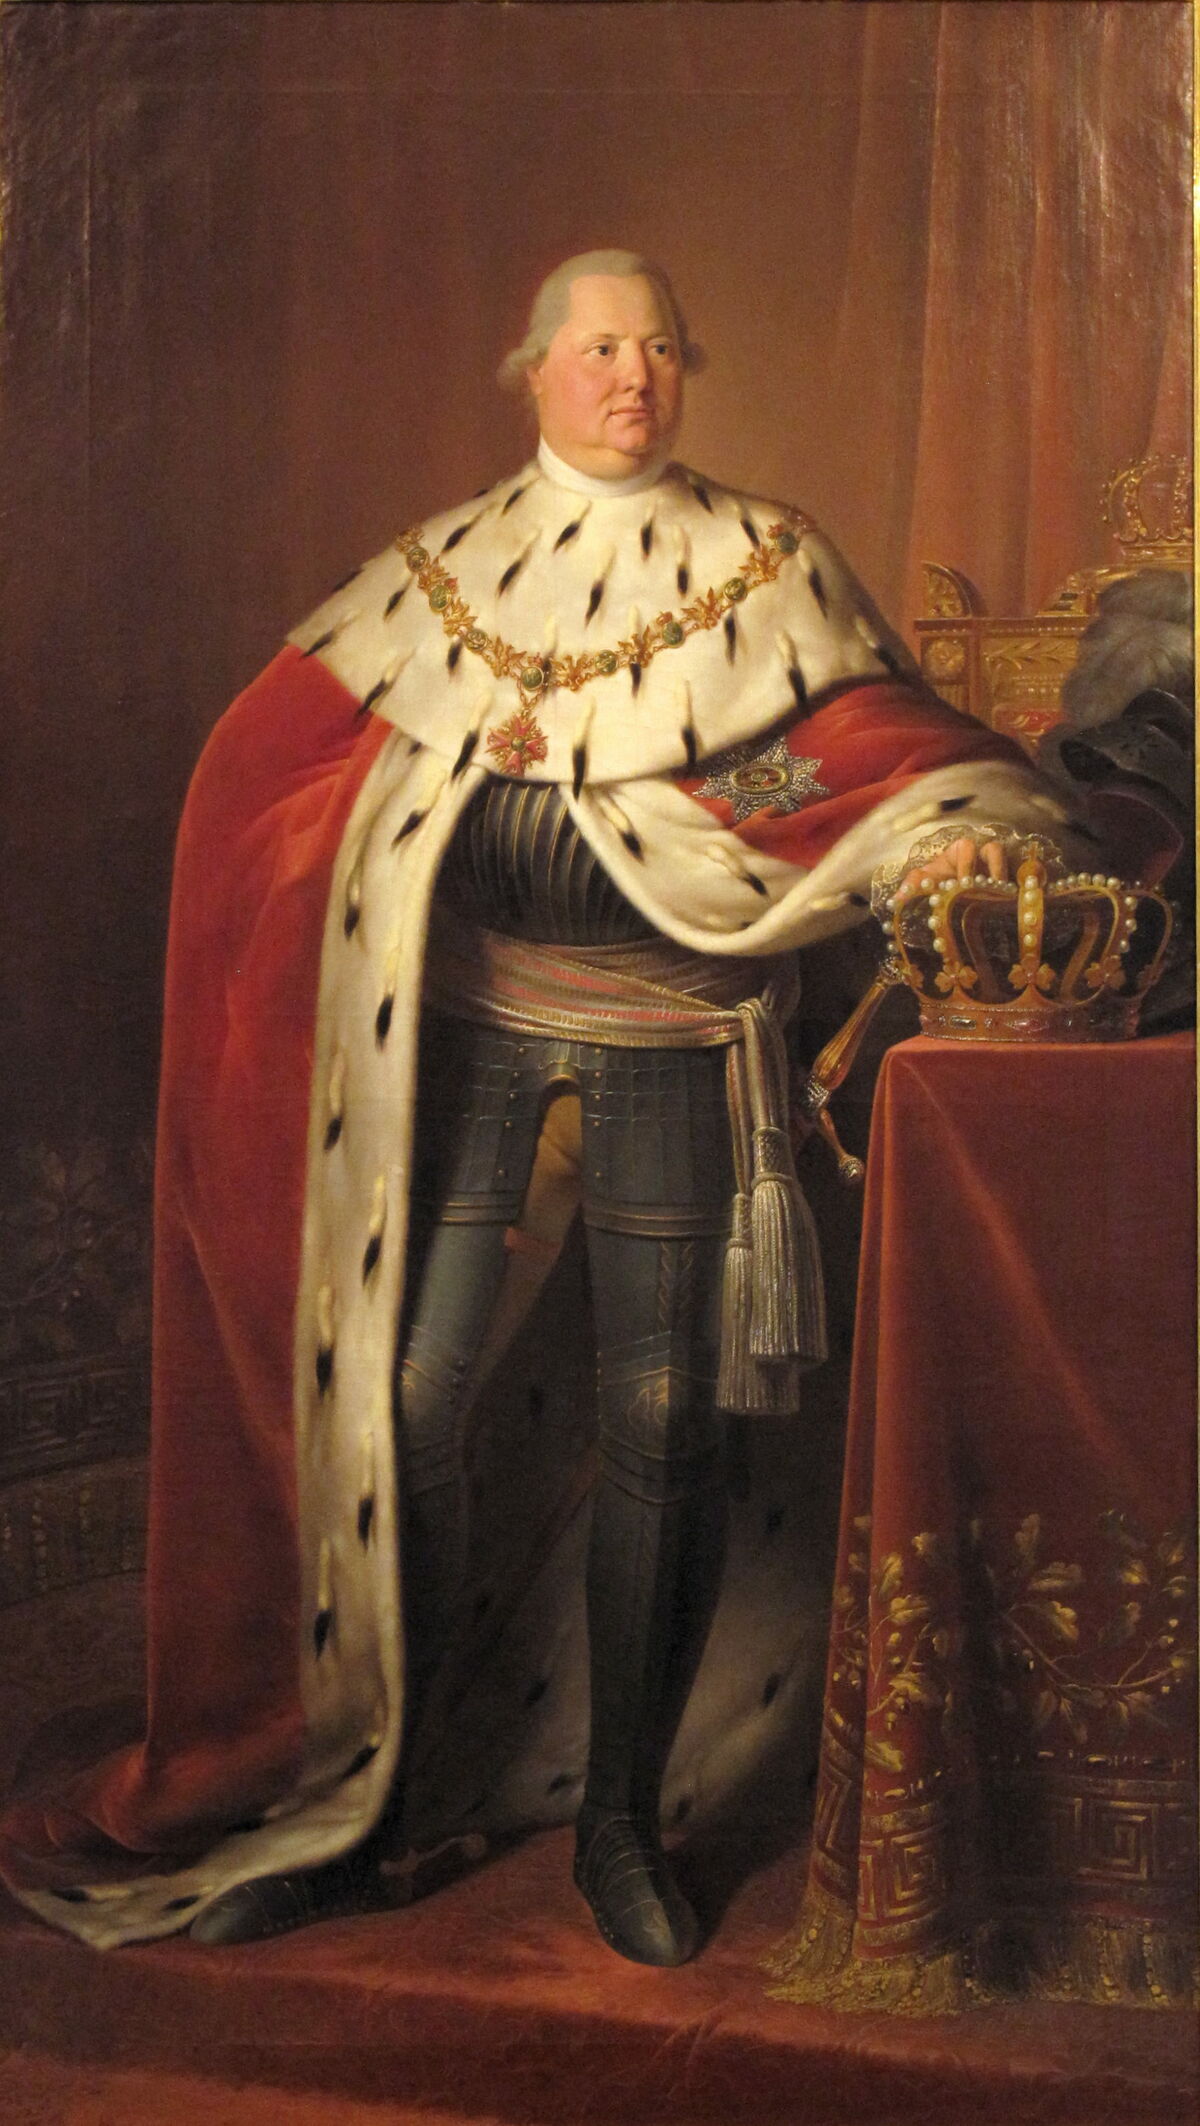 GFD 1/89: Friedrich Wilhelm Karl von Württemberg (Portrait von Johann Baptist Seele, 1806)